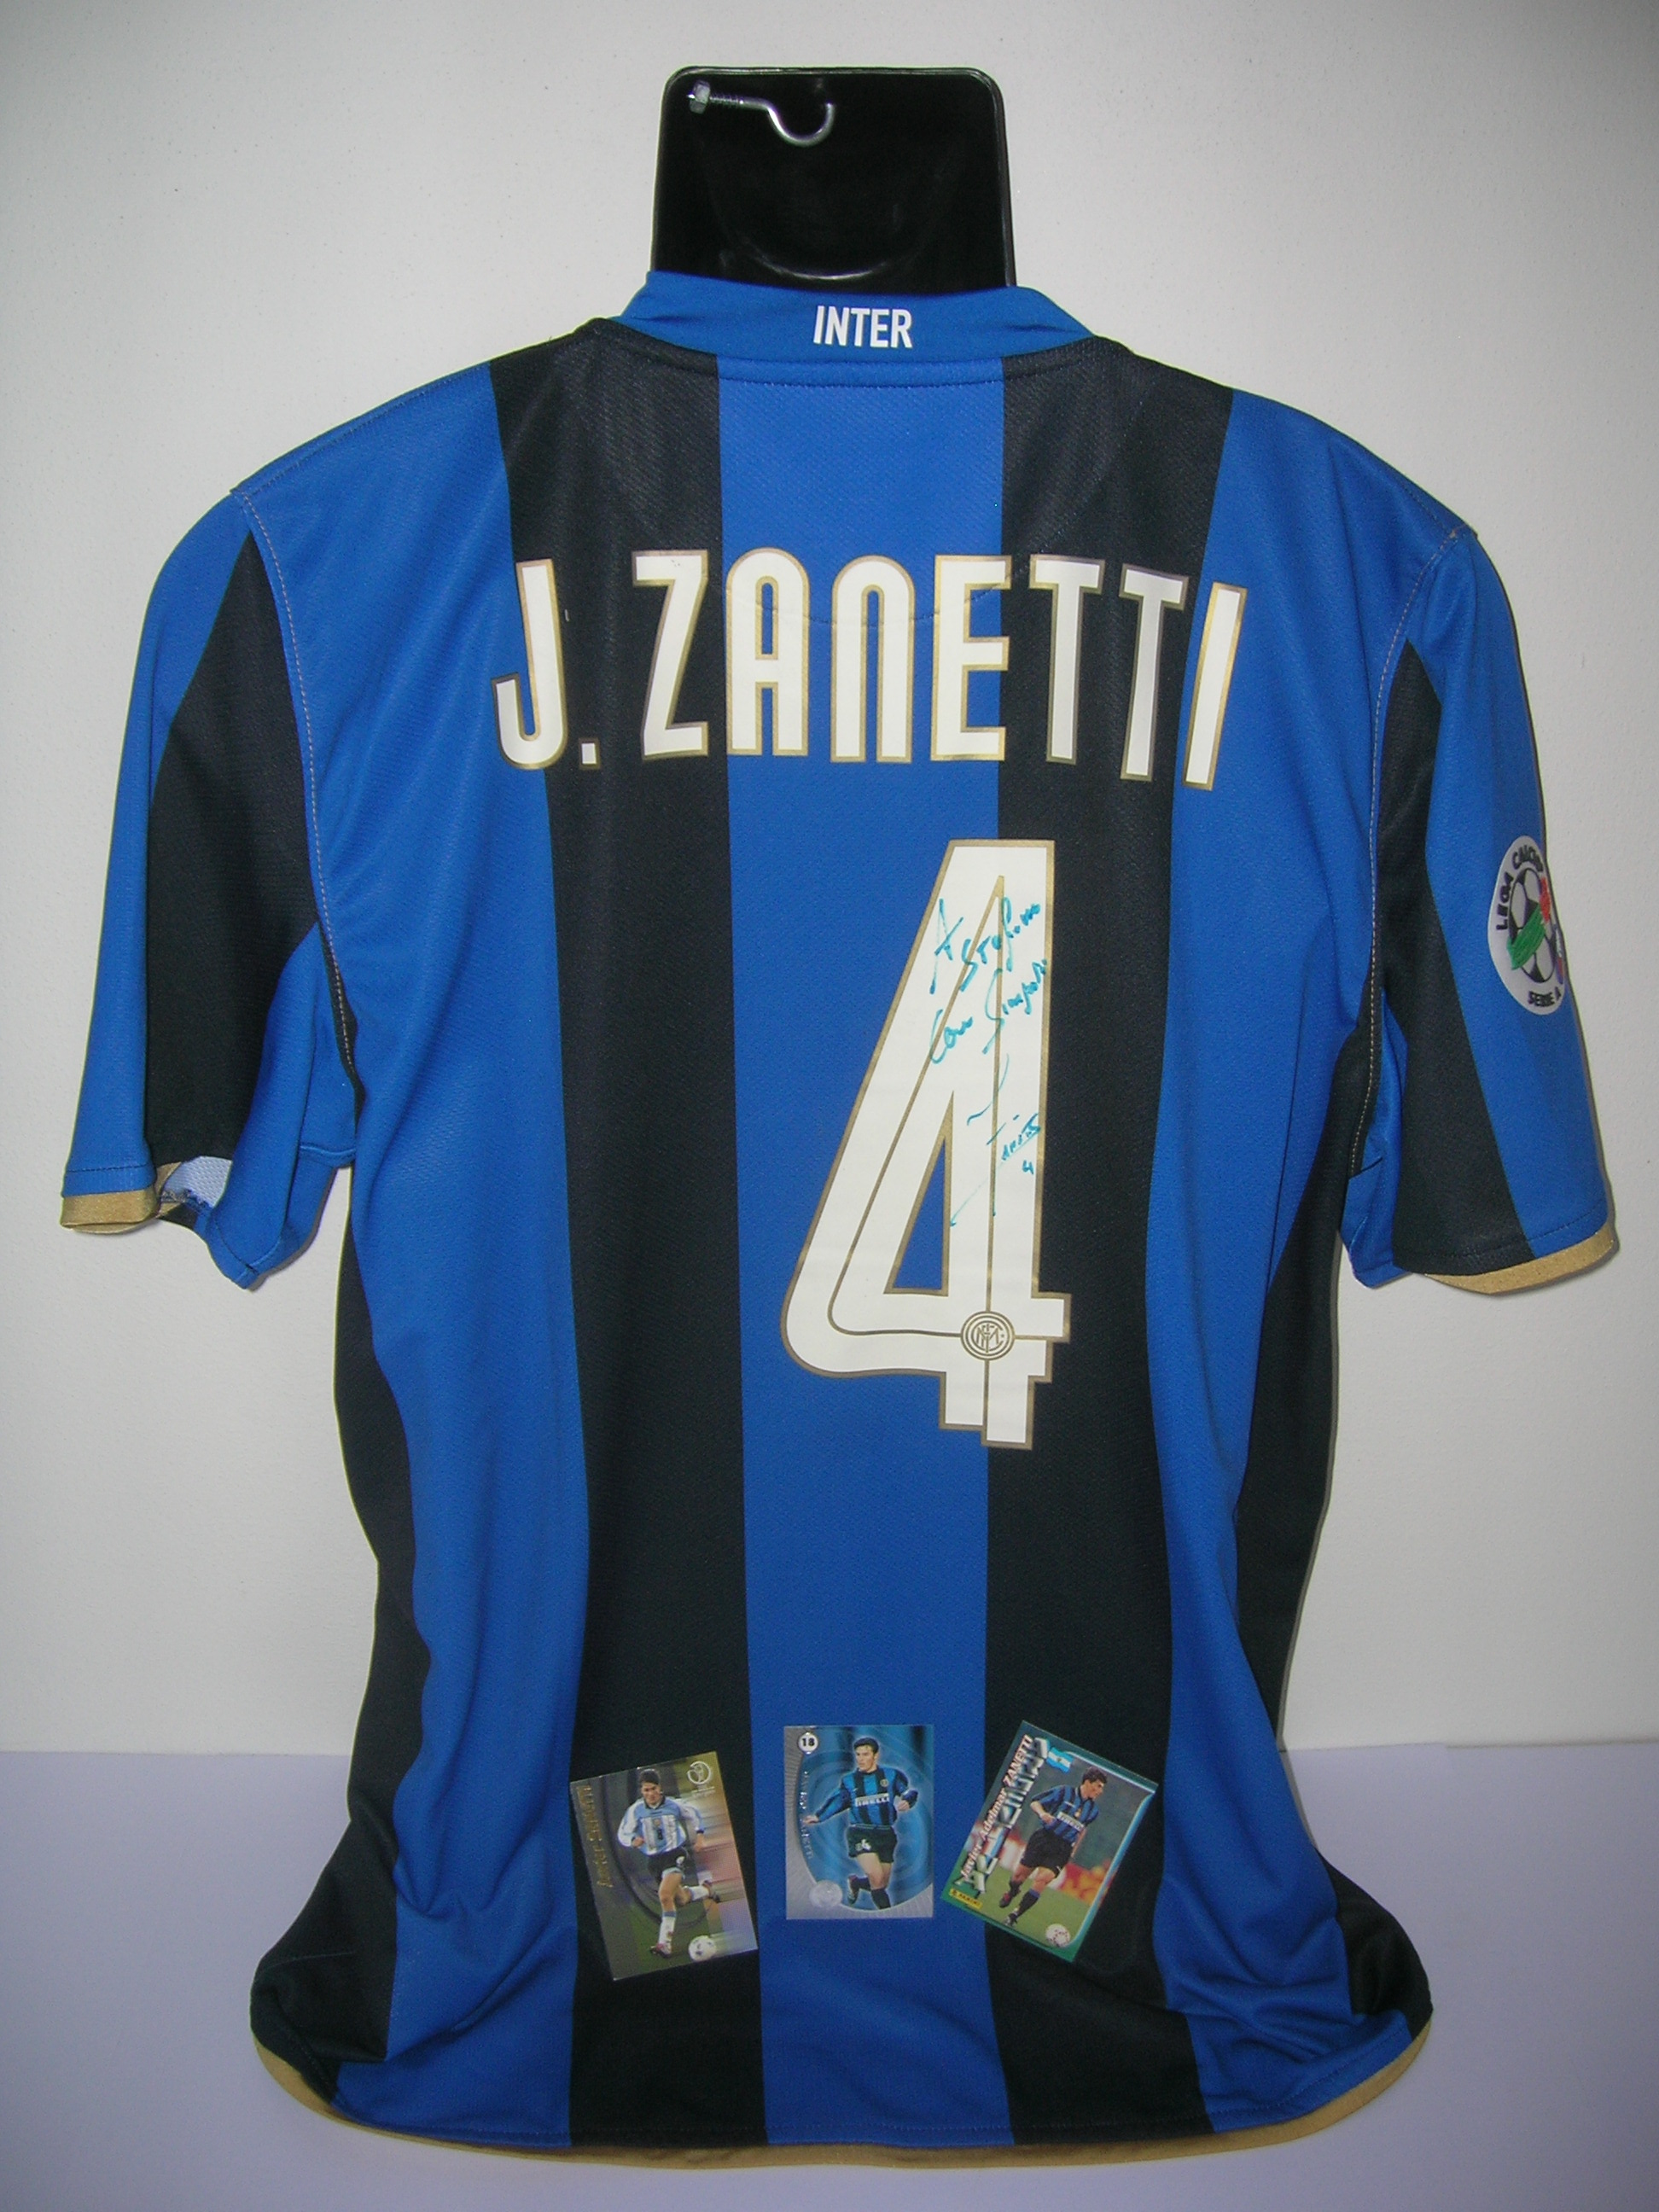 Inter  J. Zanetti  4  A-2